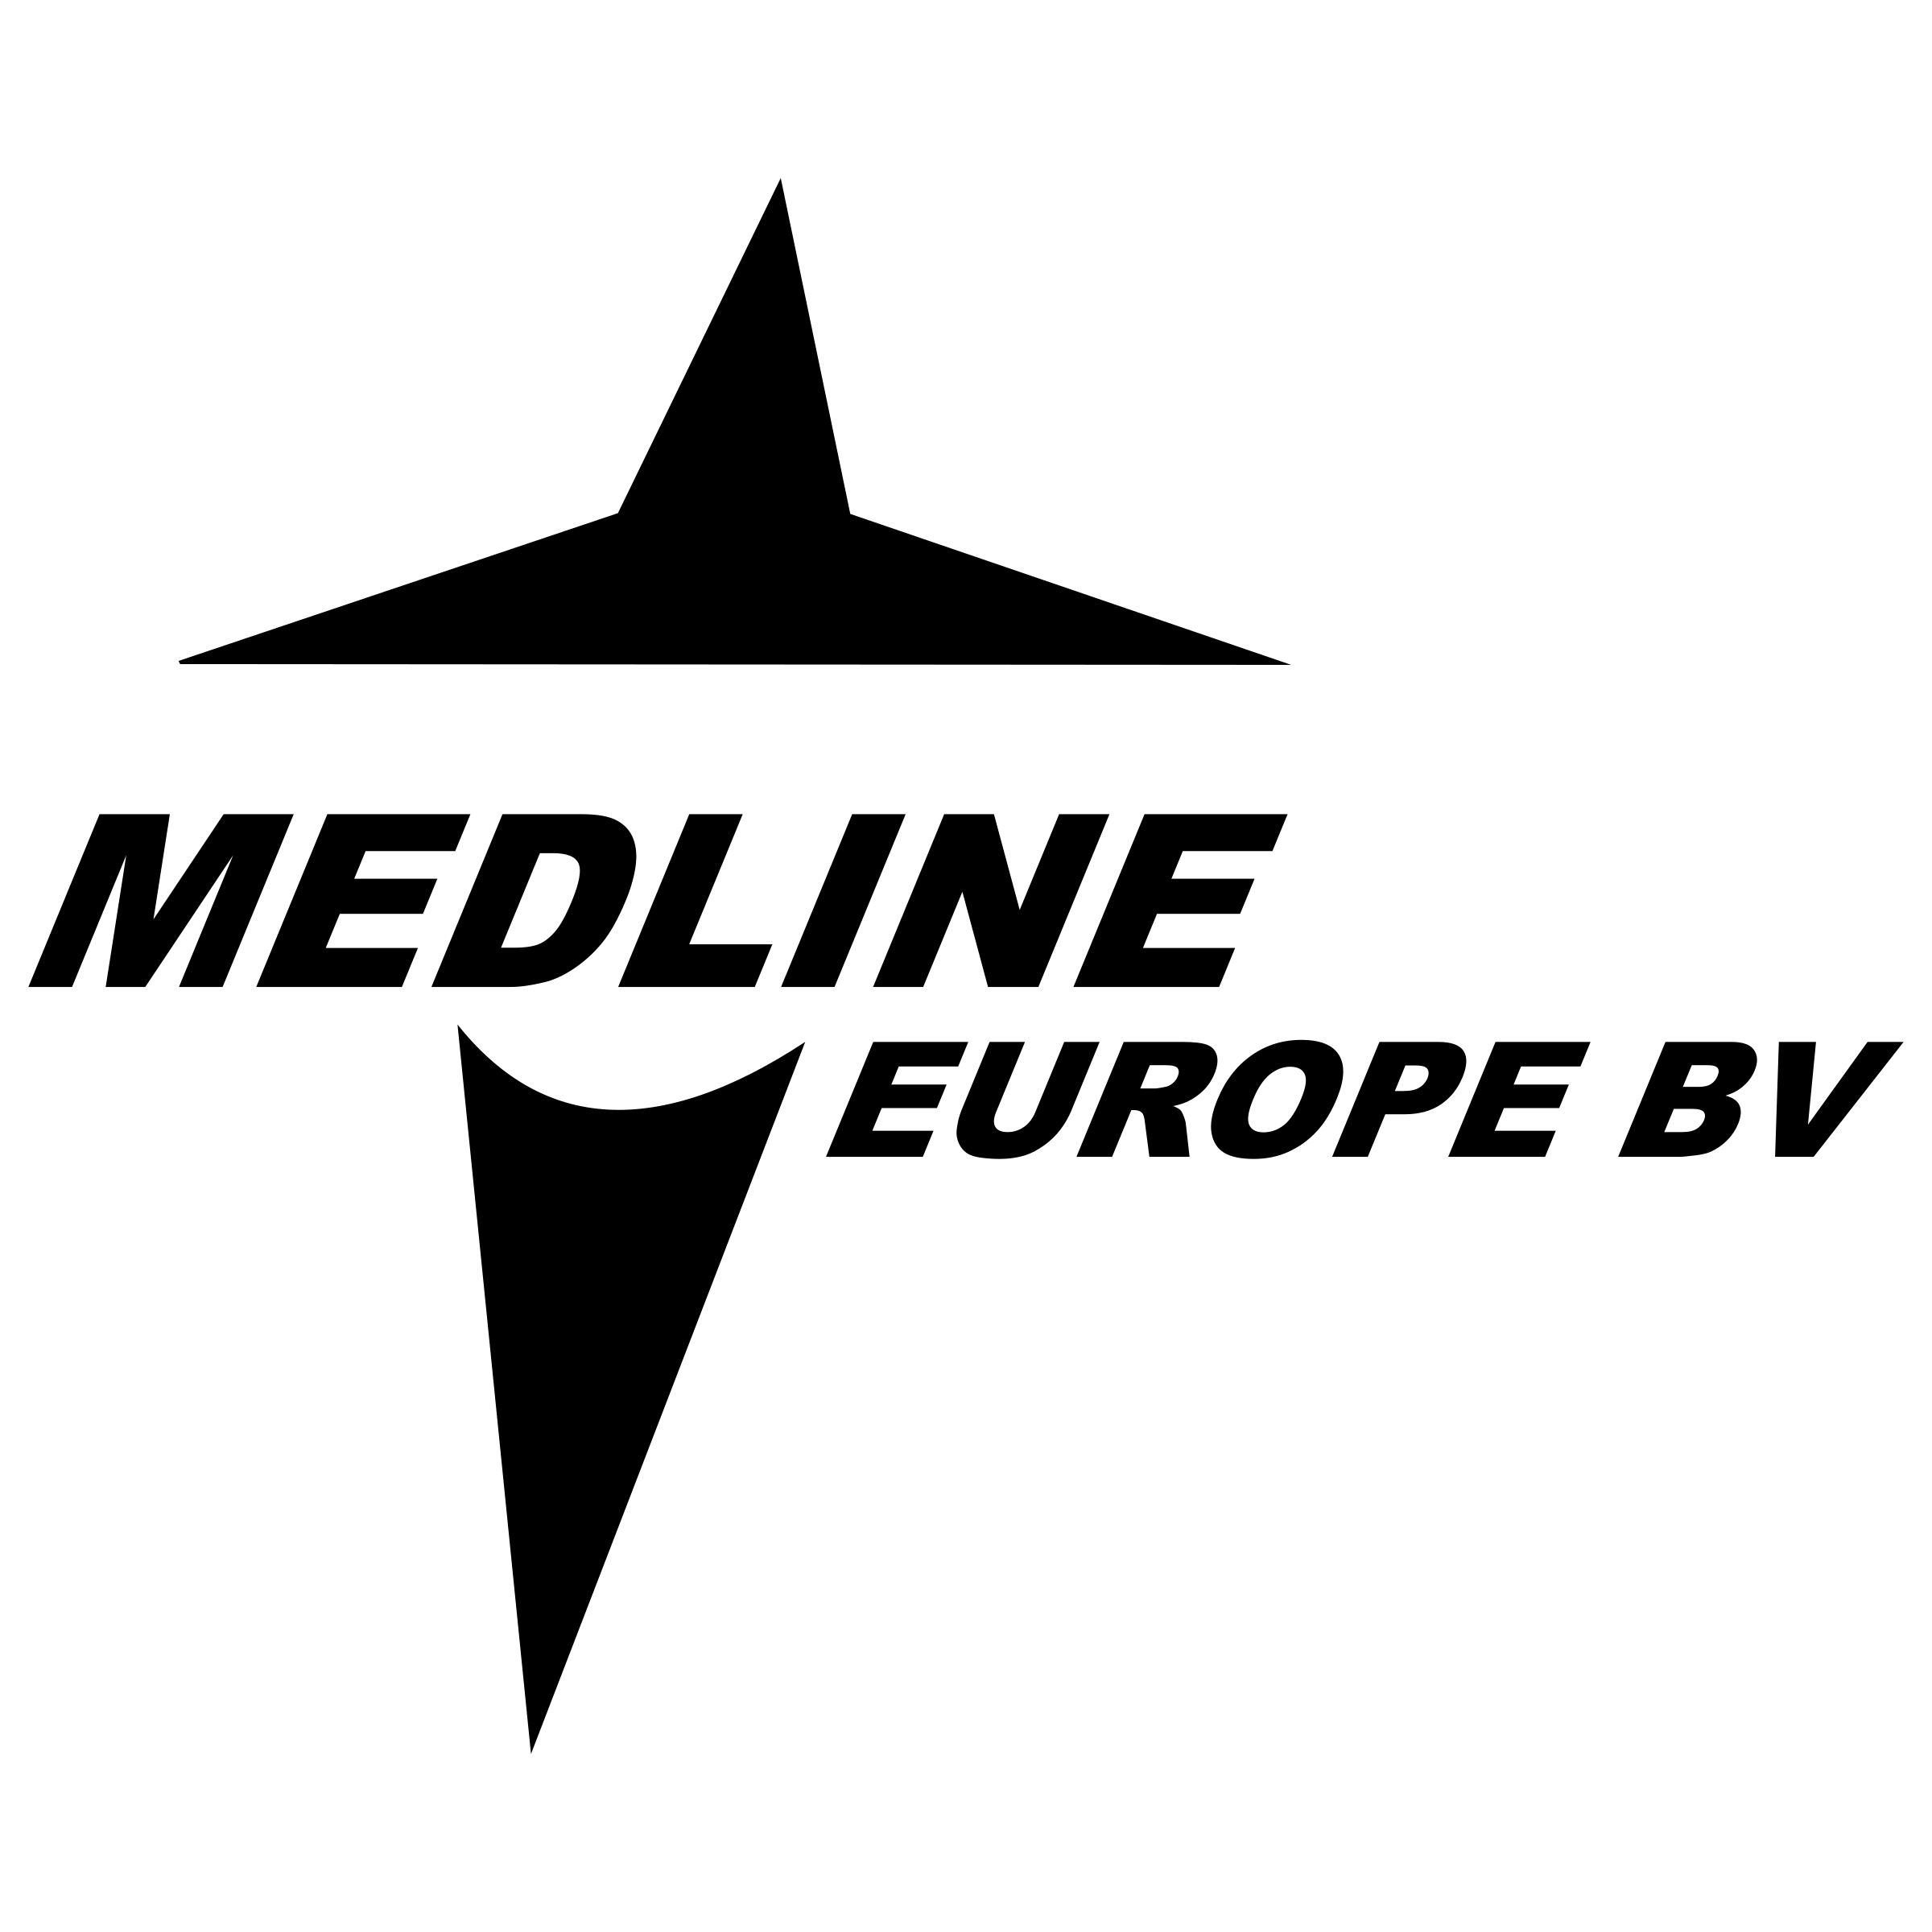 Medline Logo - Medline Europe BV Logo PNG Transparent & SVG Vector